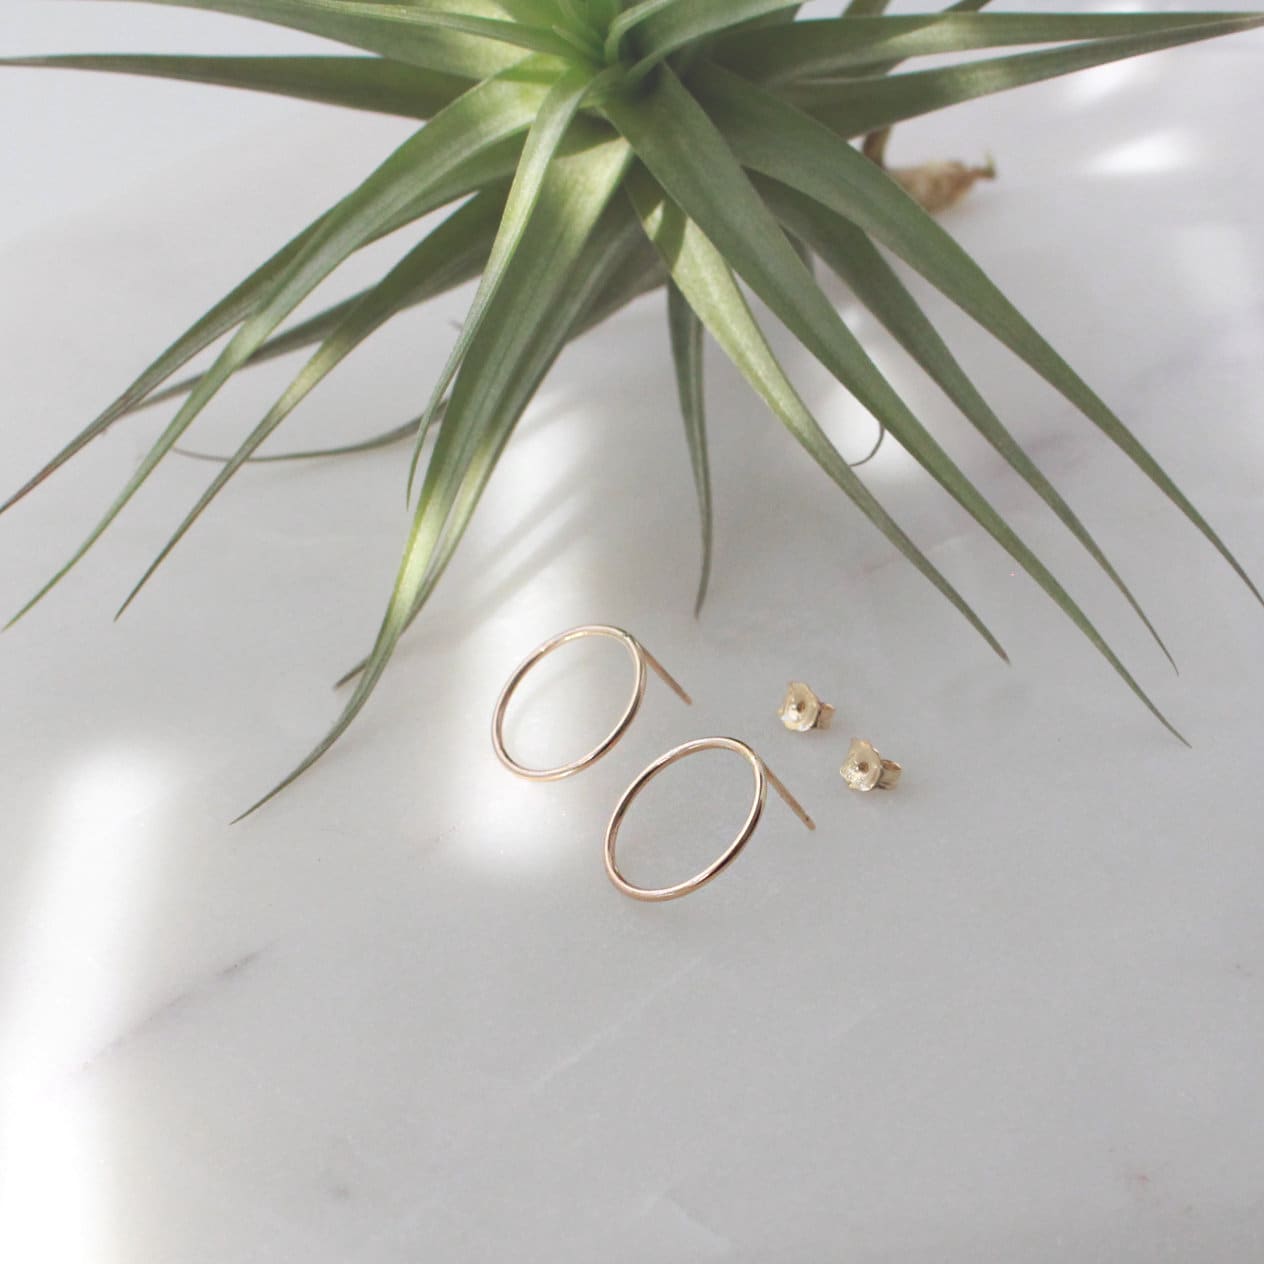 Gold Circle Stud Earrings(Medium) - 14K Gold Filled, 15mm O Ring Circle, 18ga